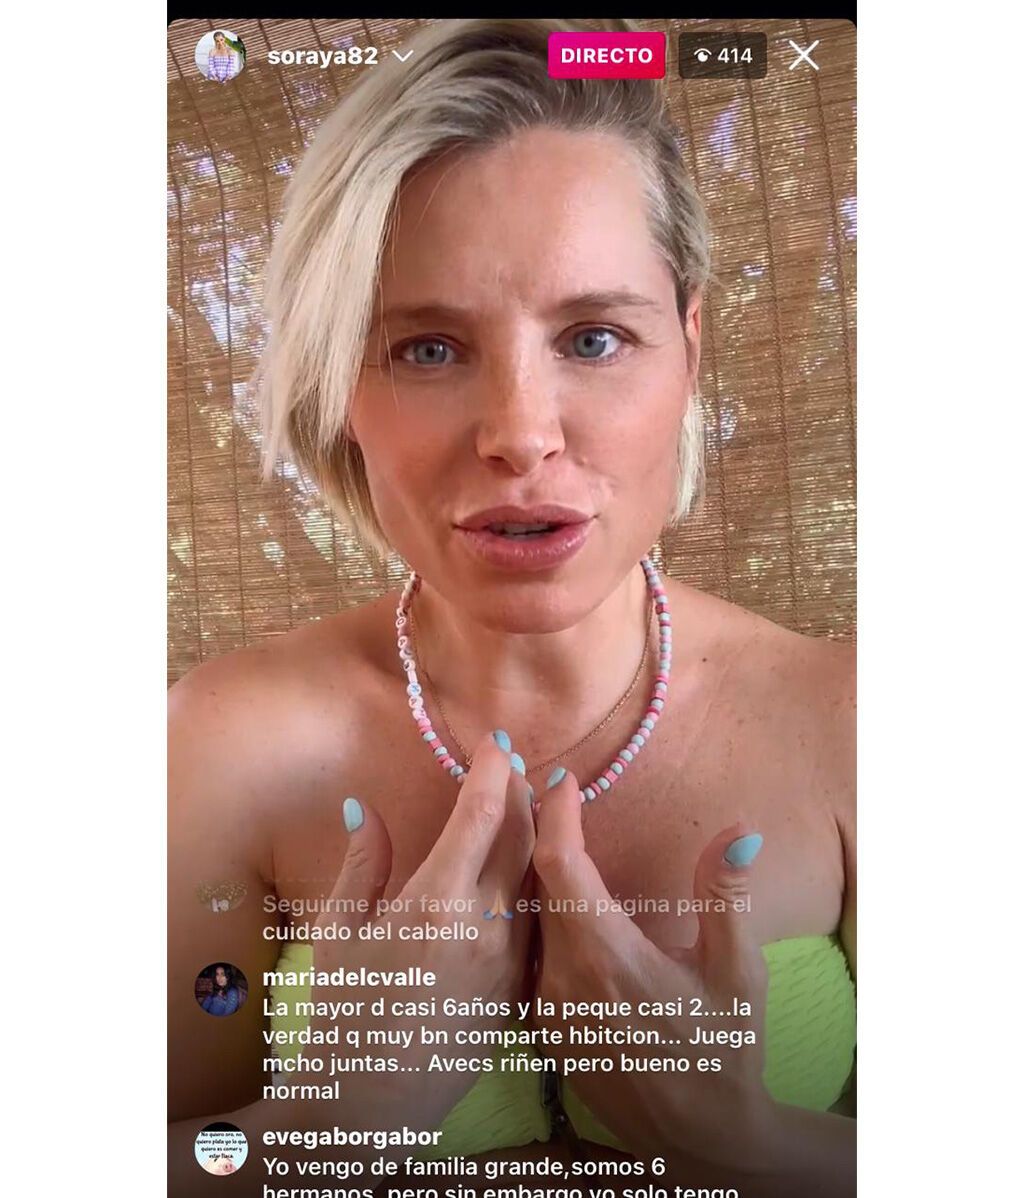 Soraya Arnelas compara sus dos embarazos en un directo de Instagram